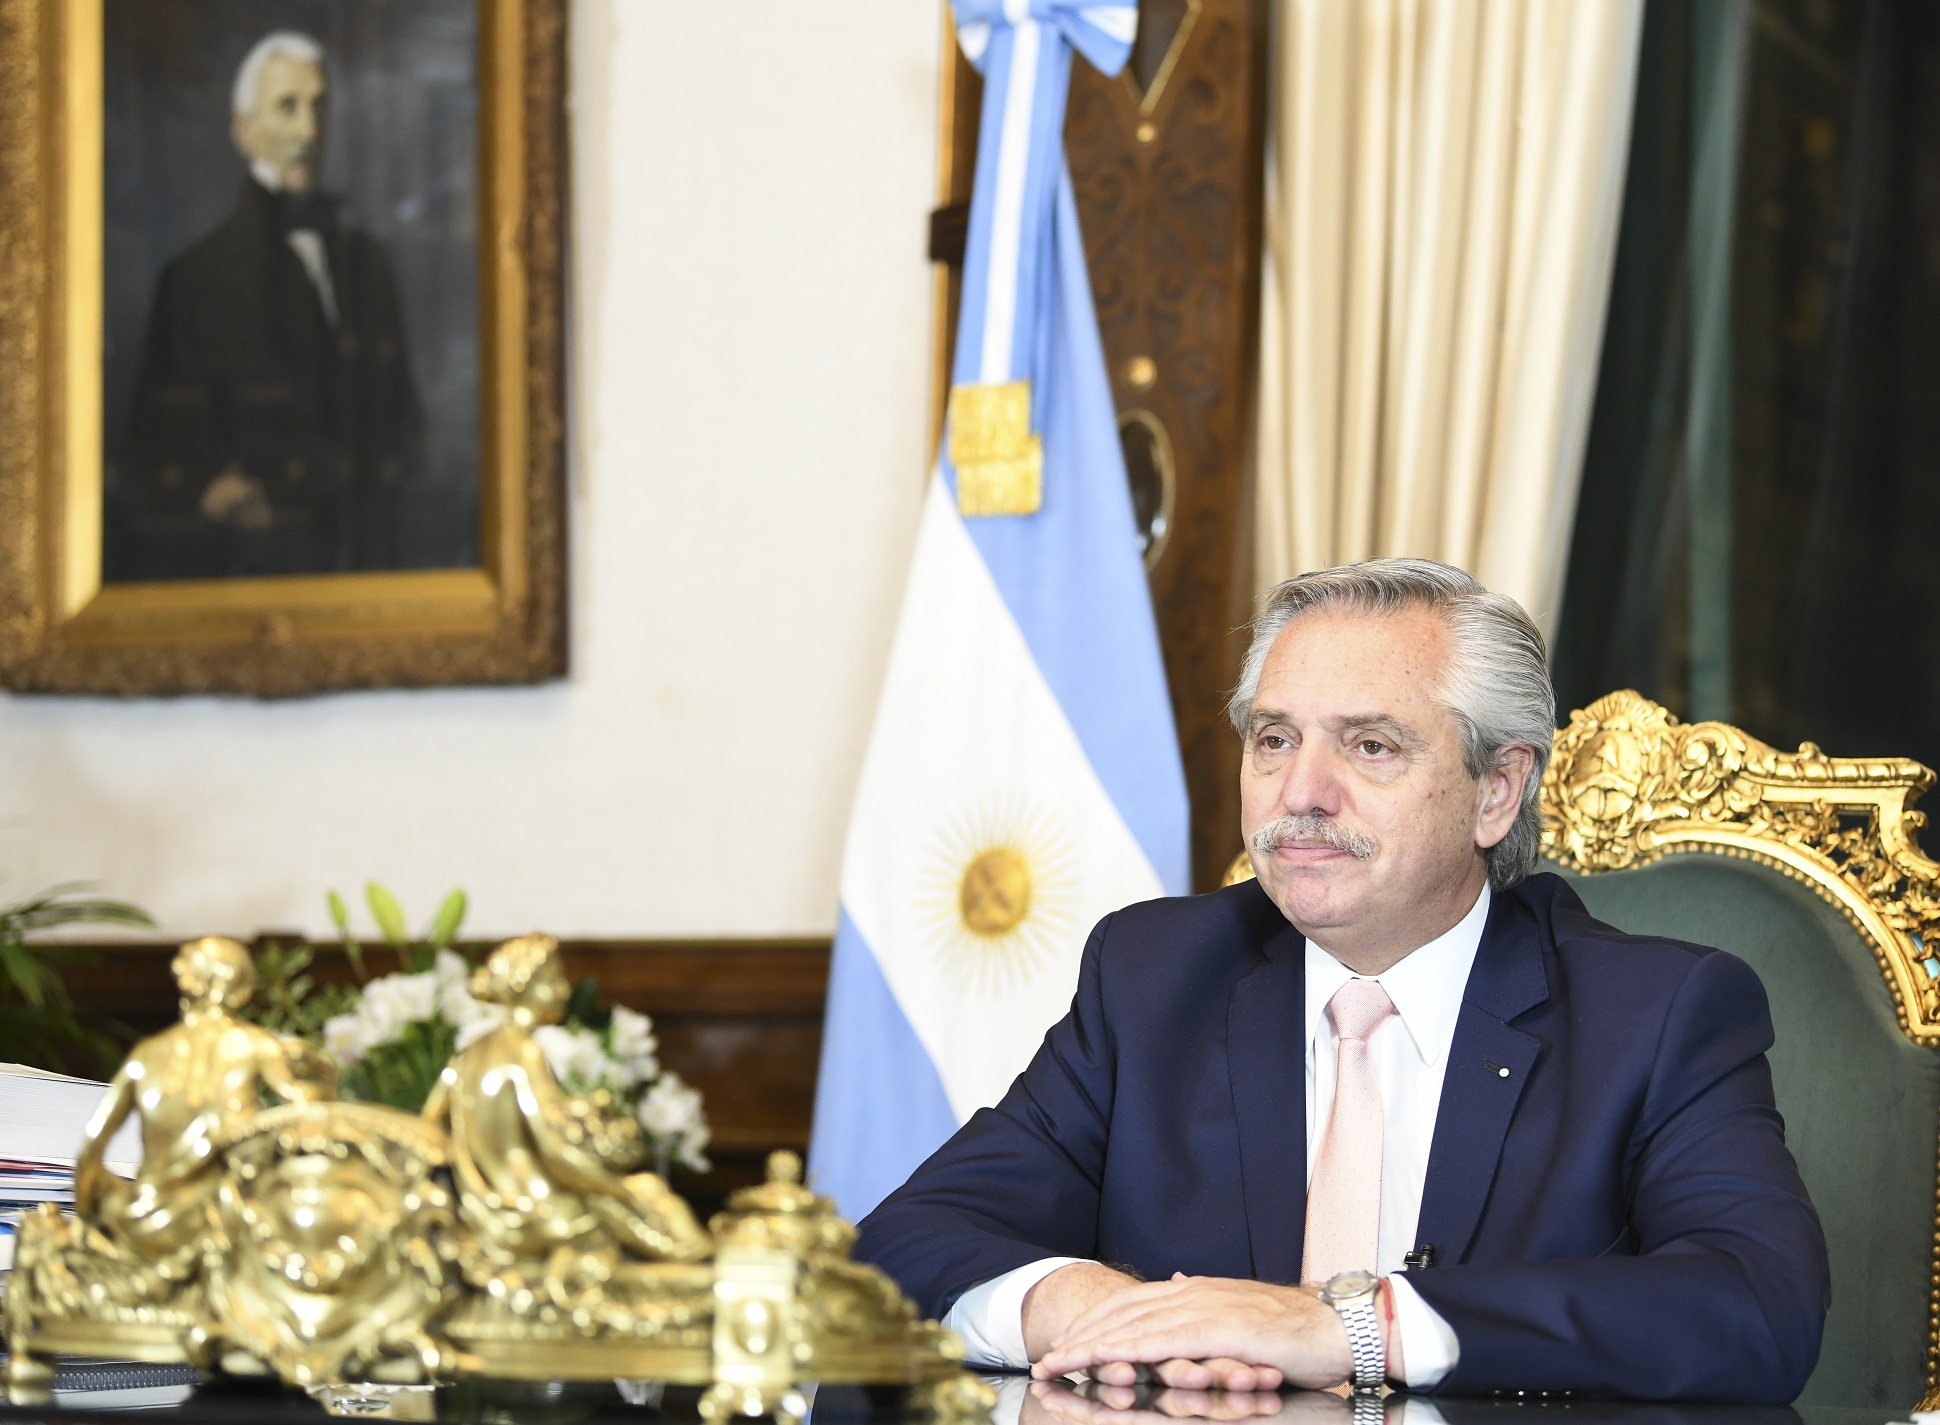 El presidente Fernández abogó por una serie de iniciativas para garantizar “un nuevo contrato global, inclusivo y sostenible”